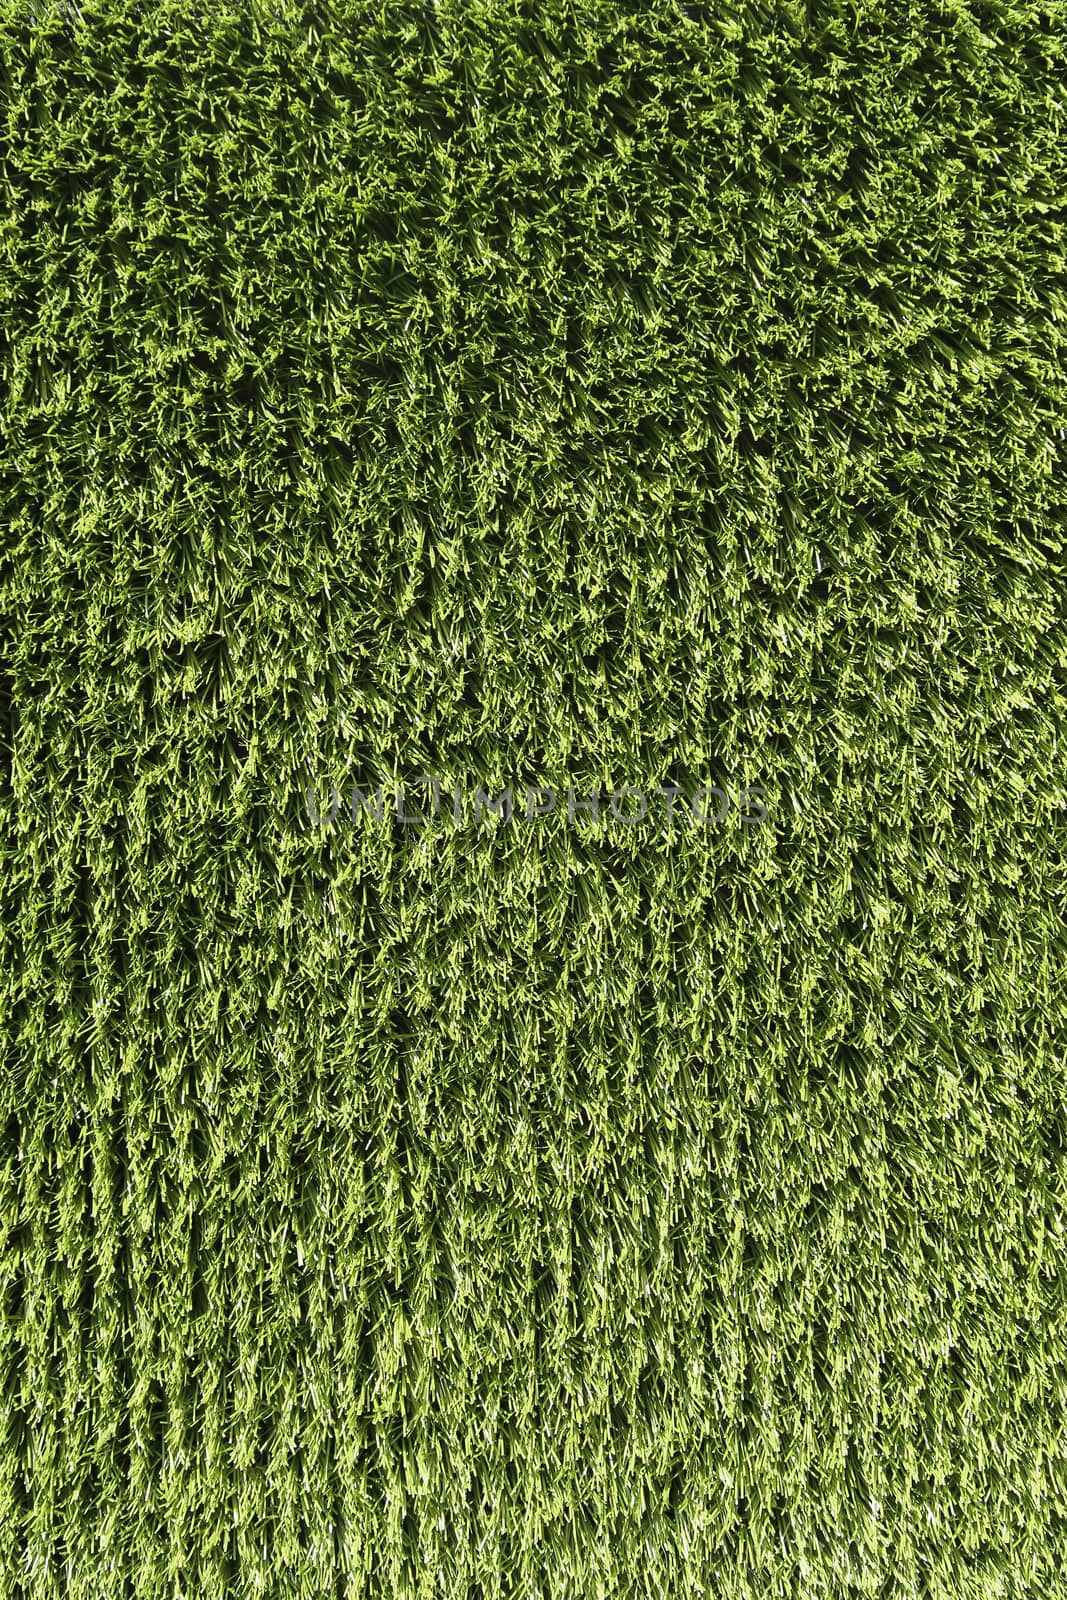 Artificial green Grass background